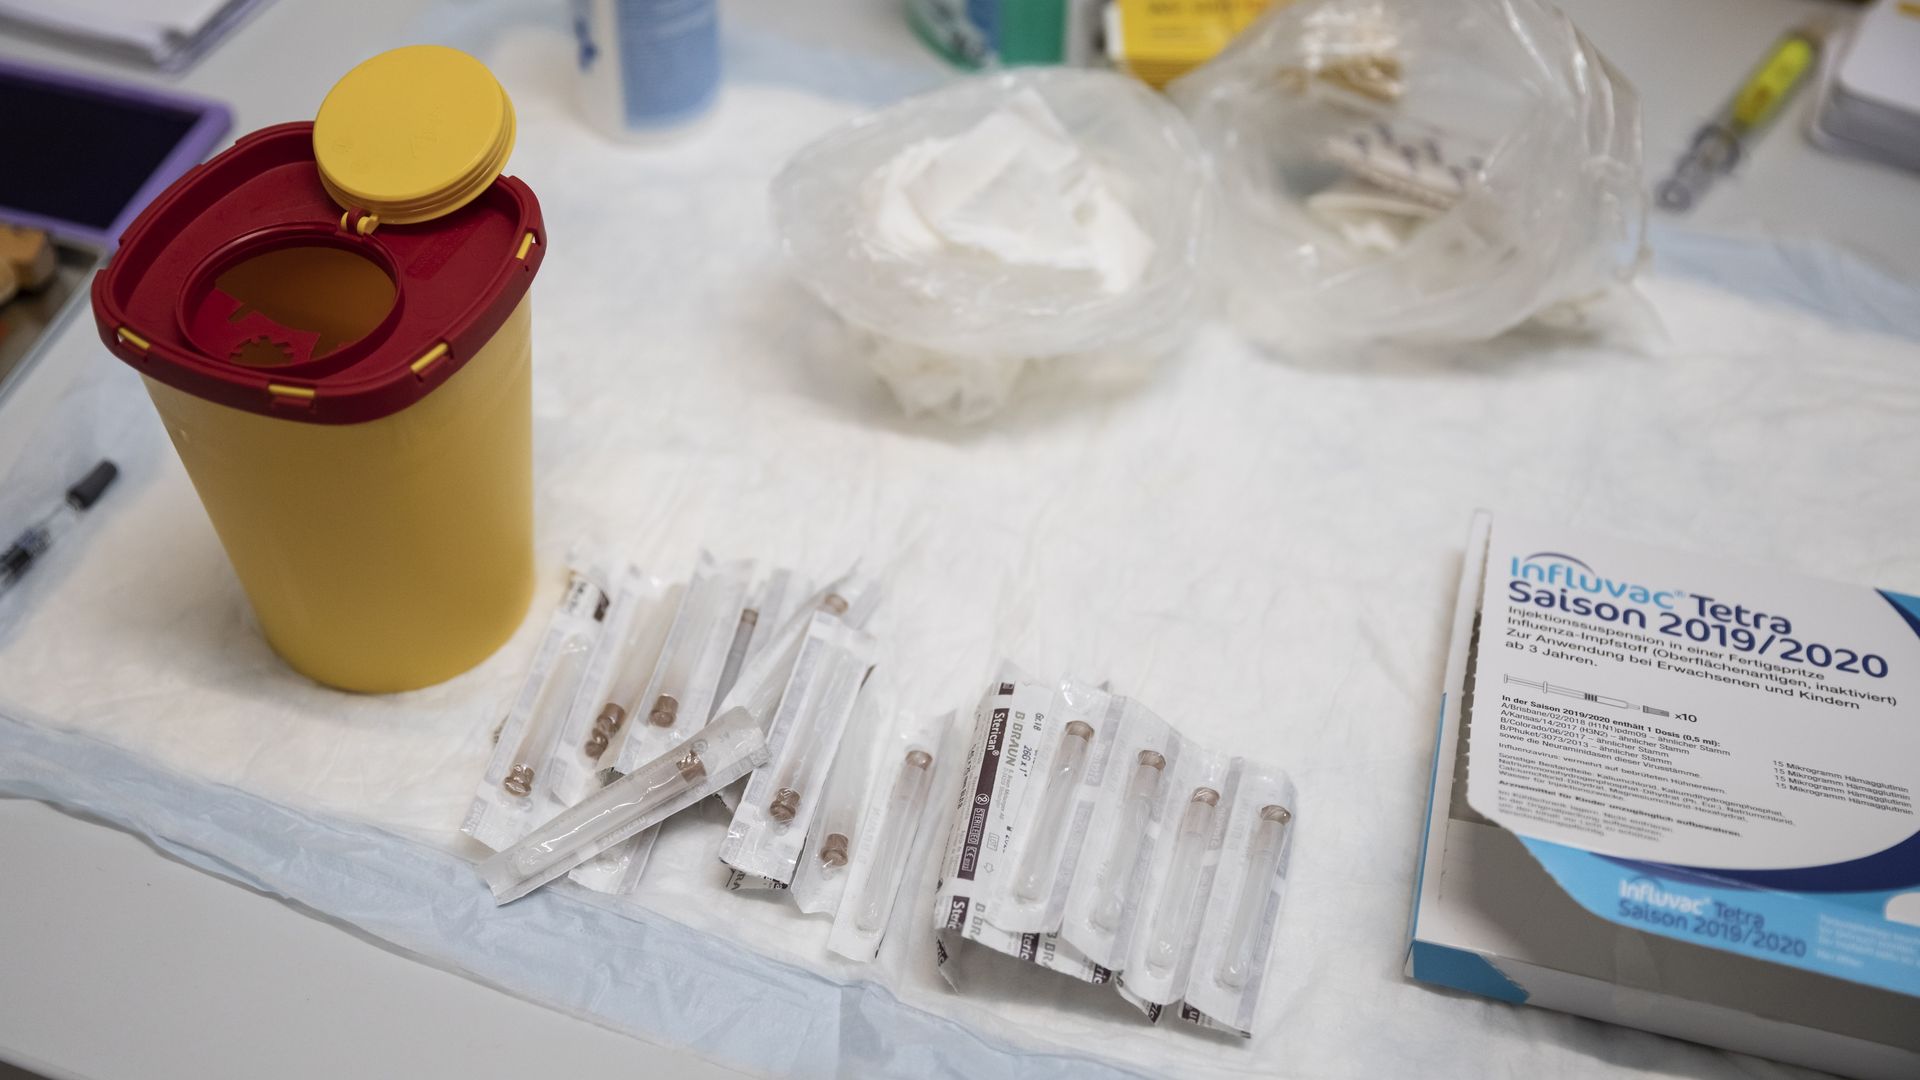 Berlin: Influenza vaccination utensils 